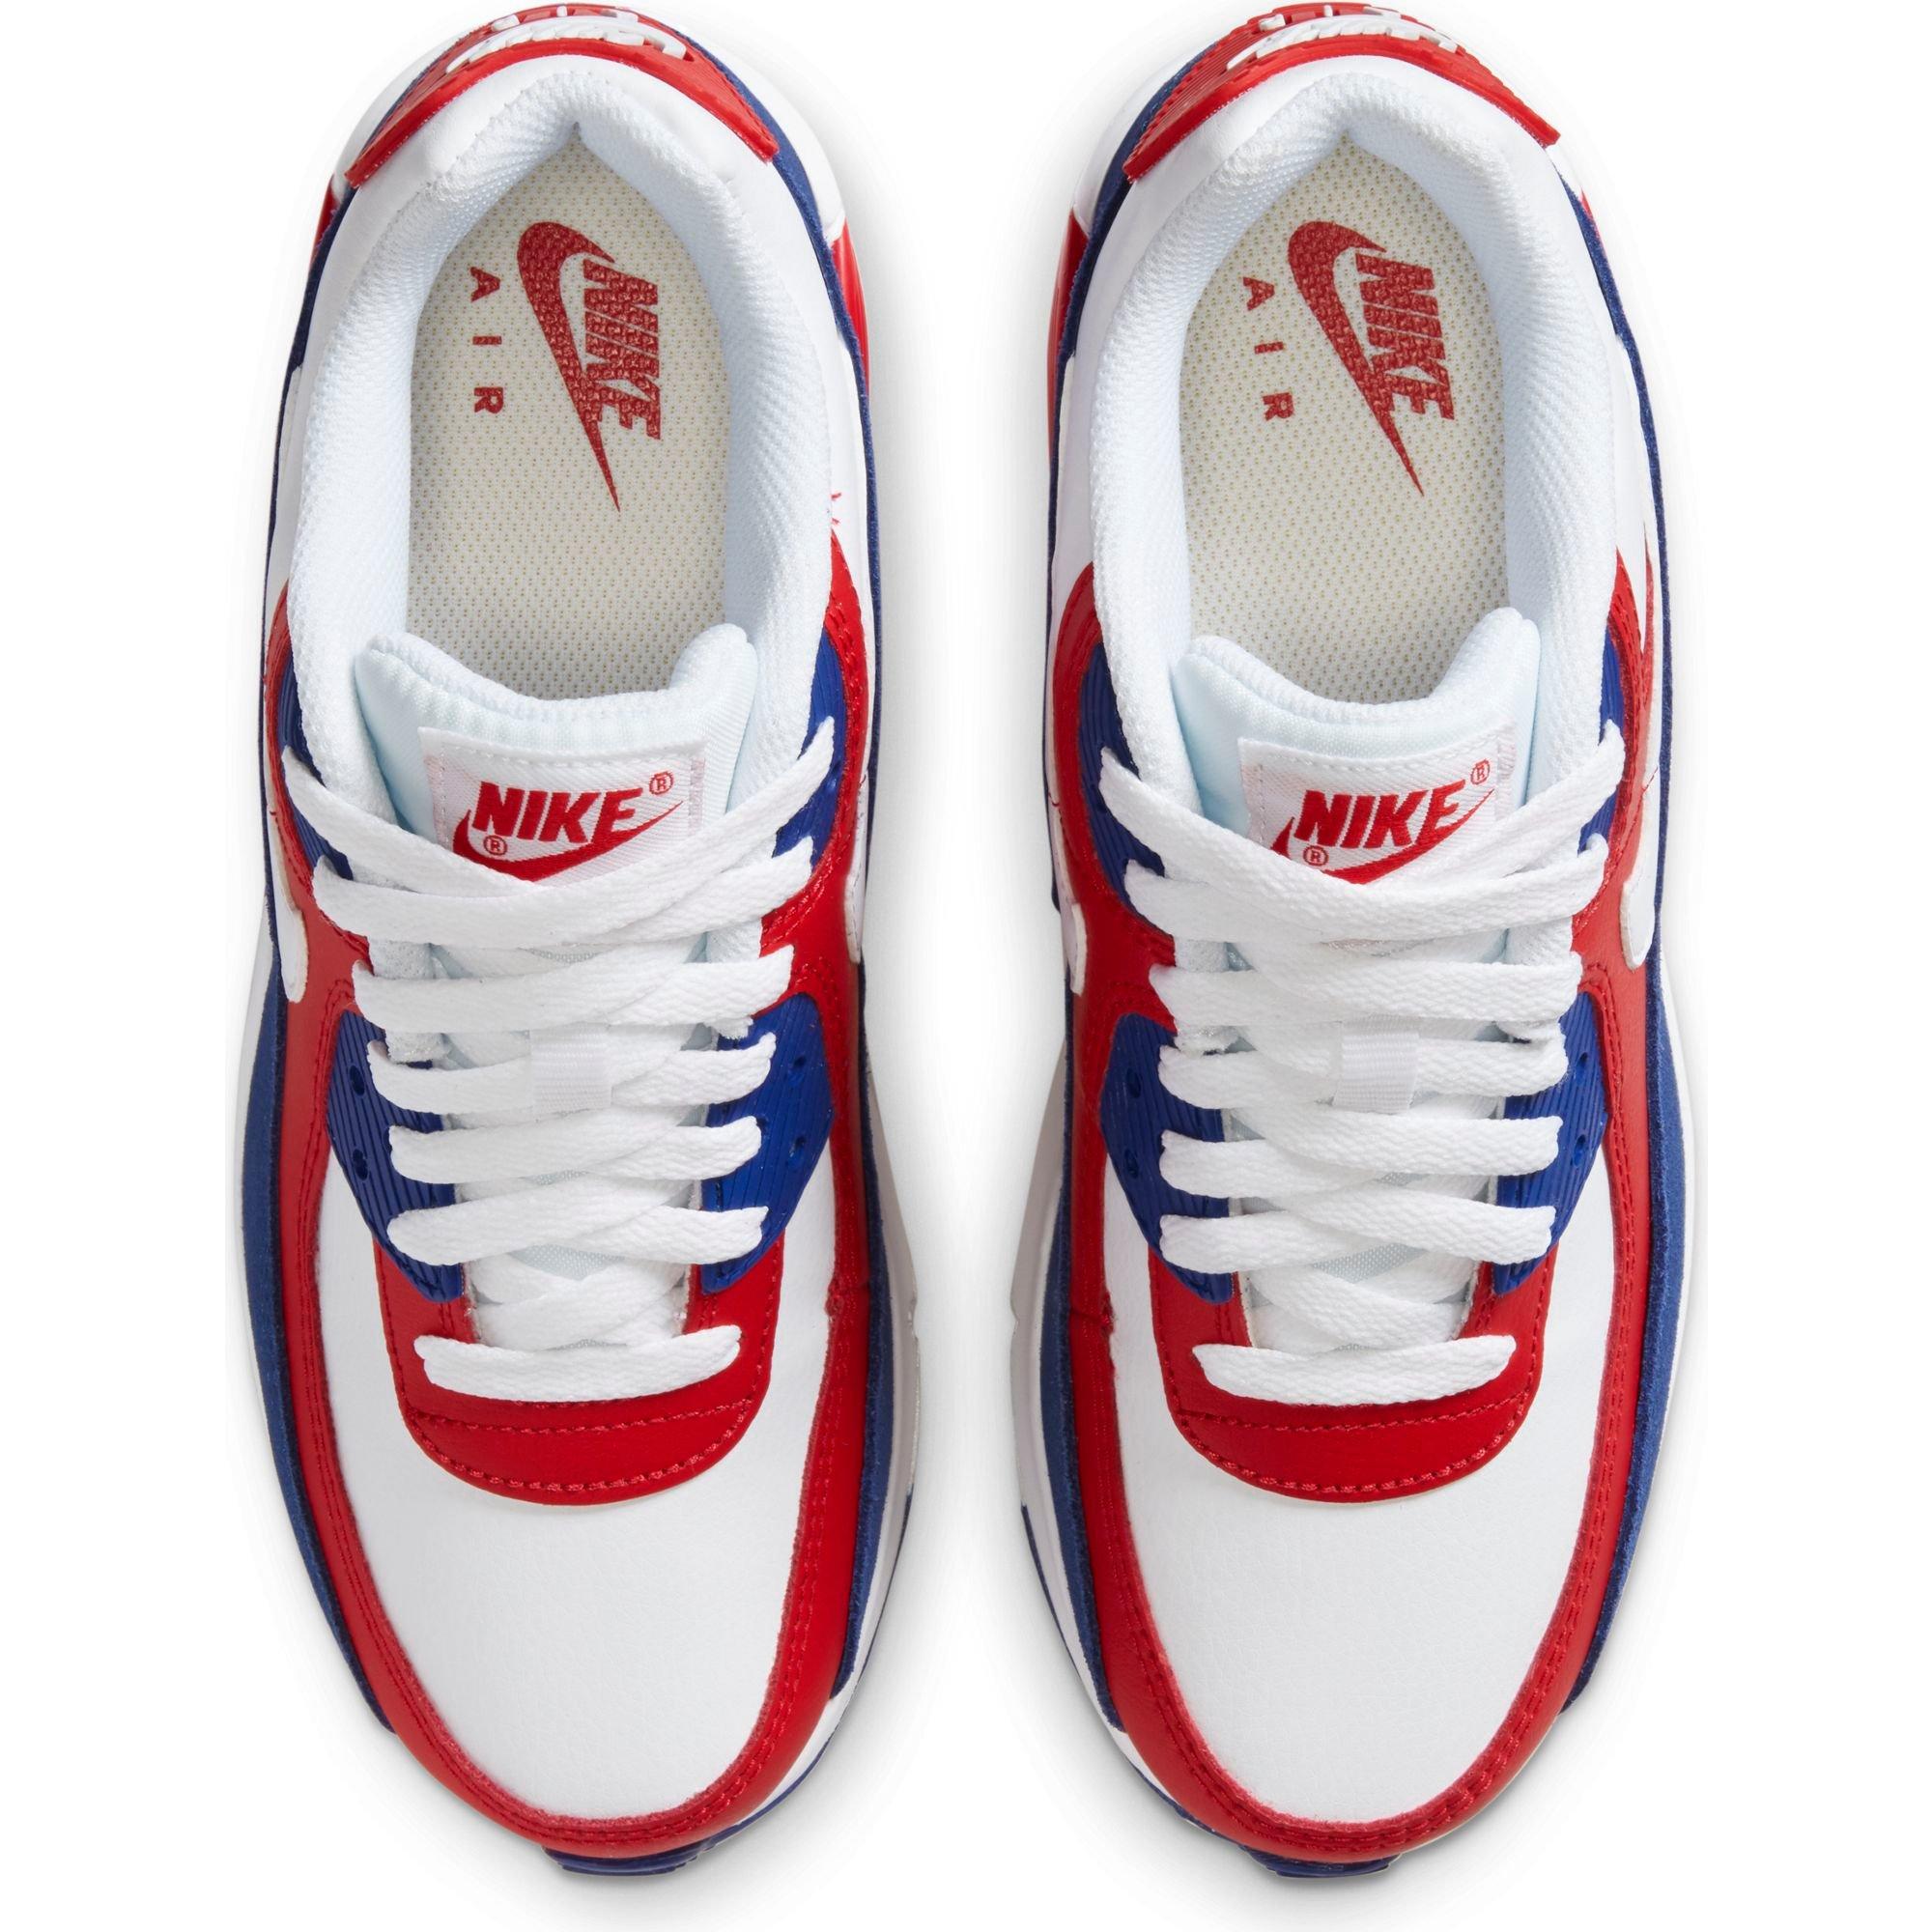 Impulso En la madrugada tímido Nike Air Max 90 "Red/White/Blue" Grade School Boys' Shoe